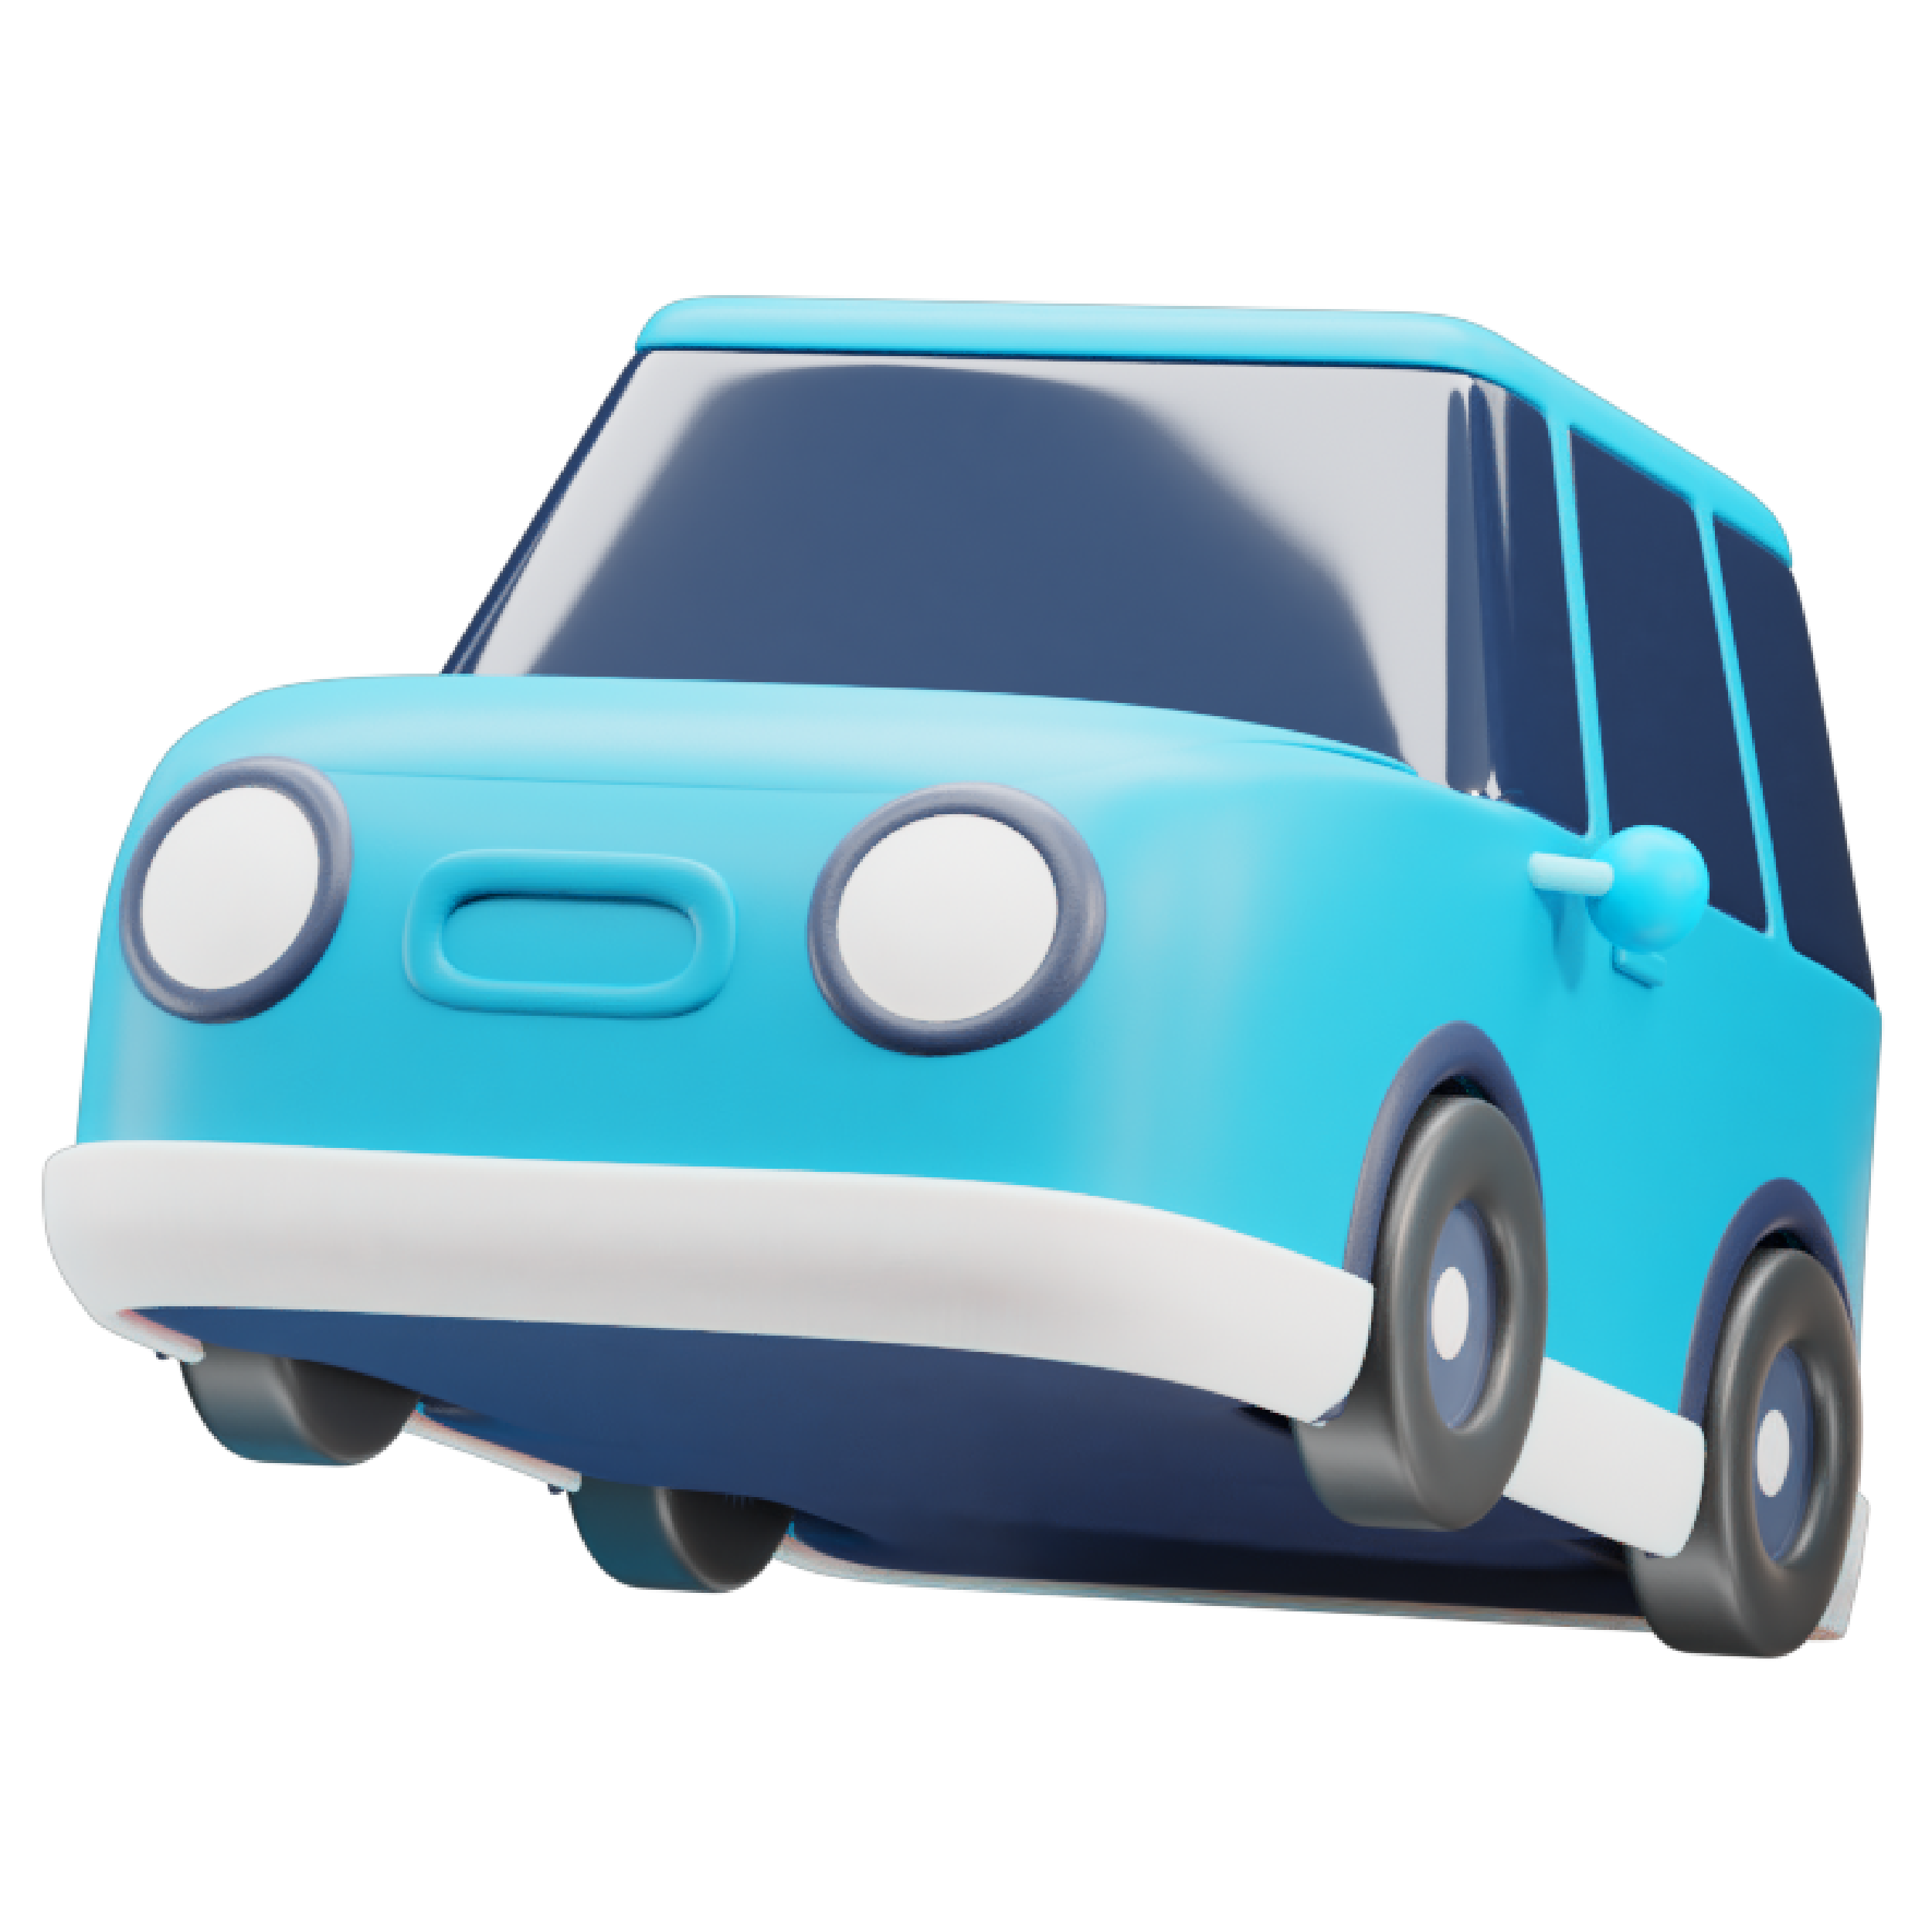 Ilustração de um carro azul